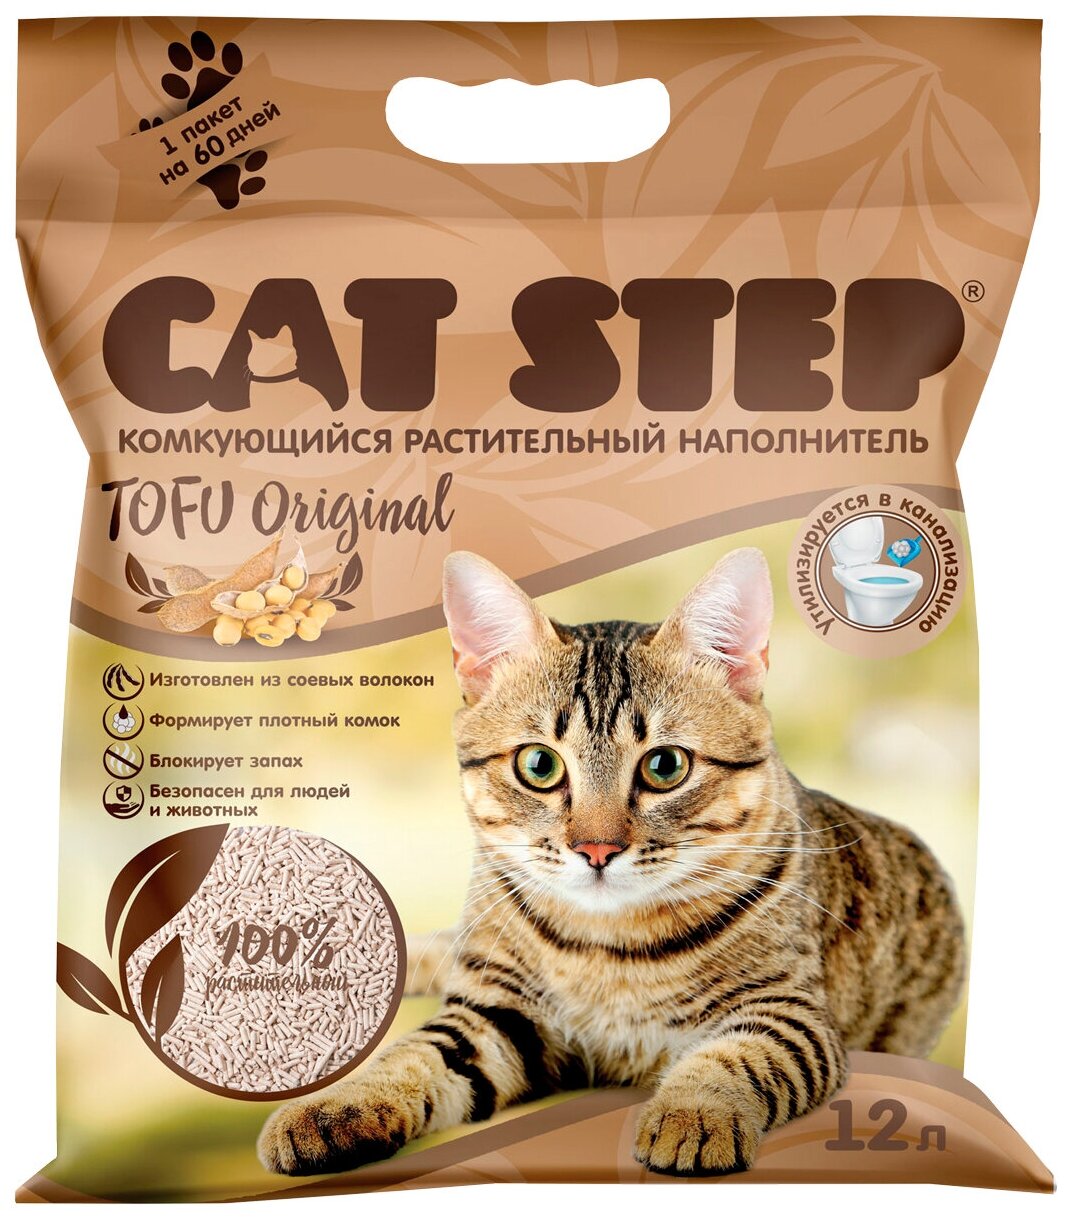 CAT STEP TOFU ORIGINAL - Кэт степ наполнитель комкующийся для туалета кошек (6 л)